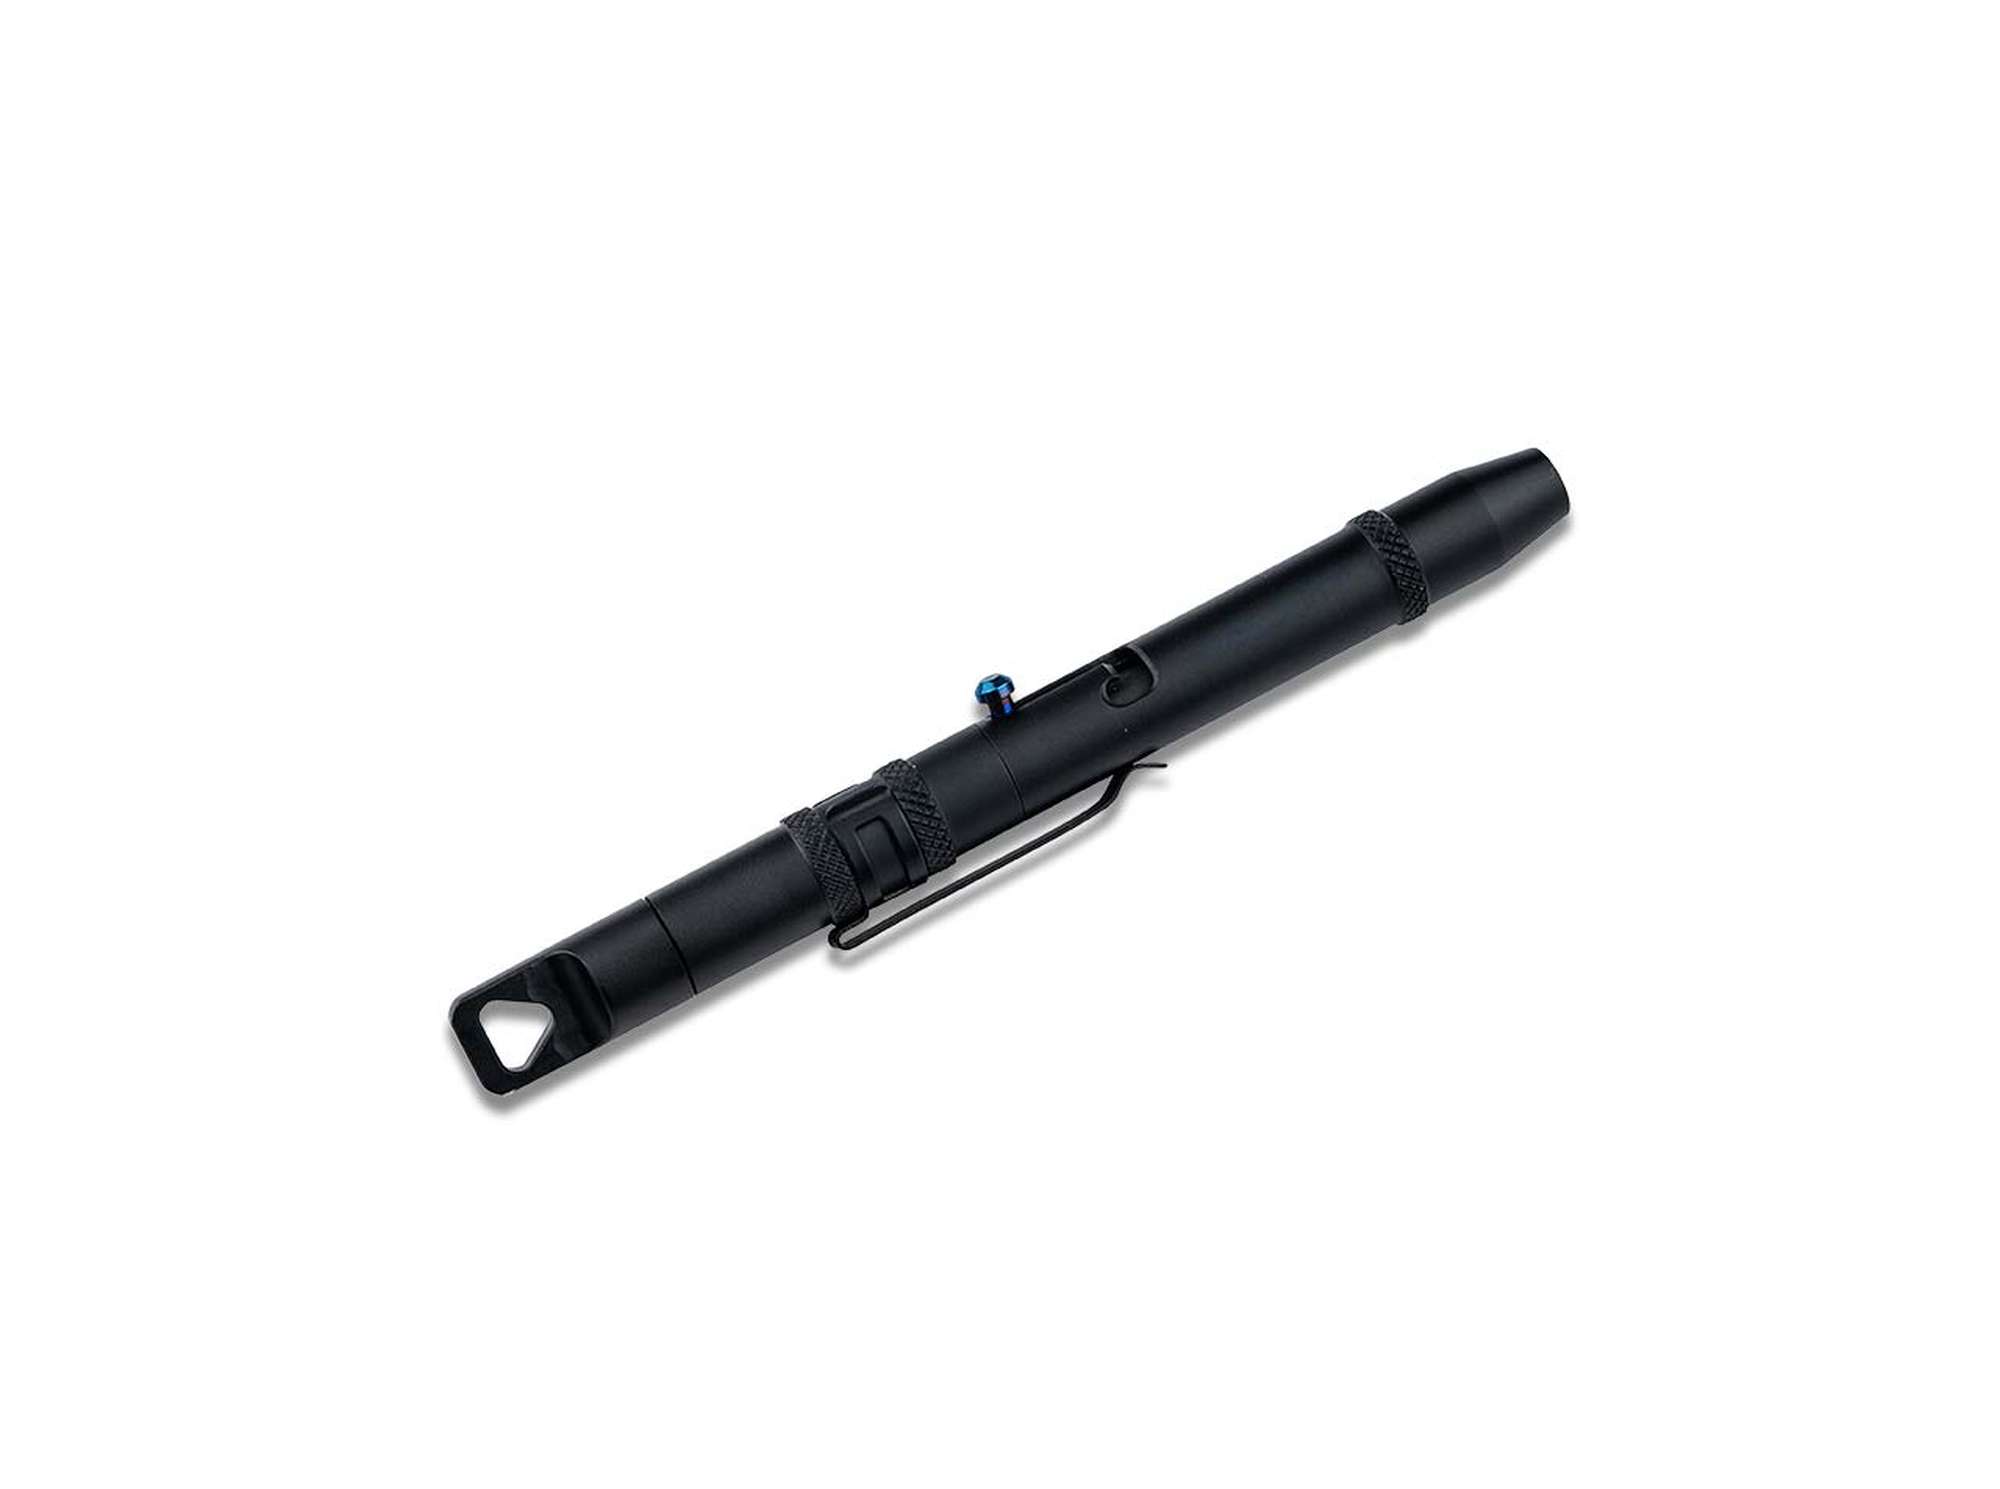 Tool Pen